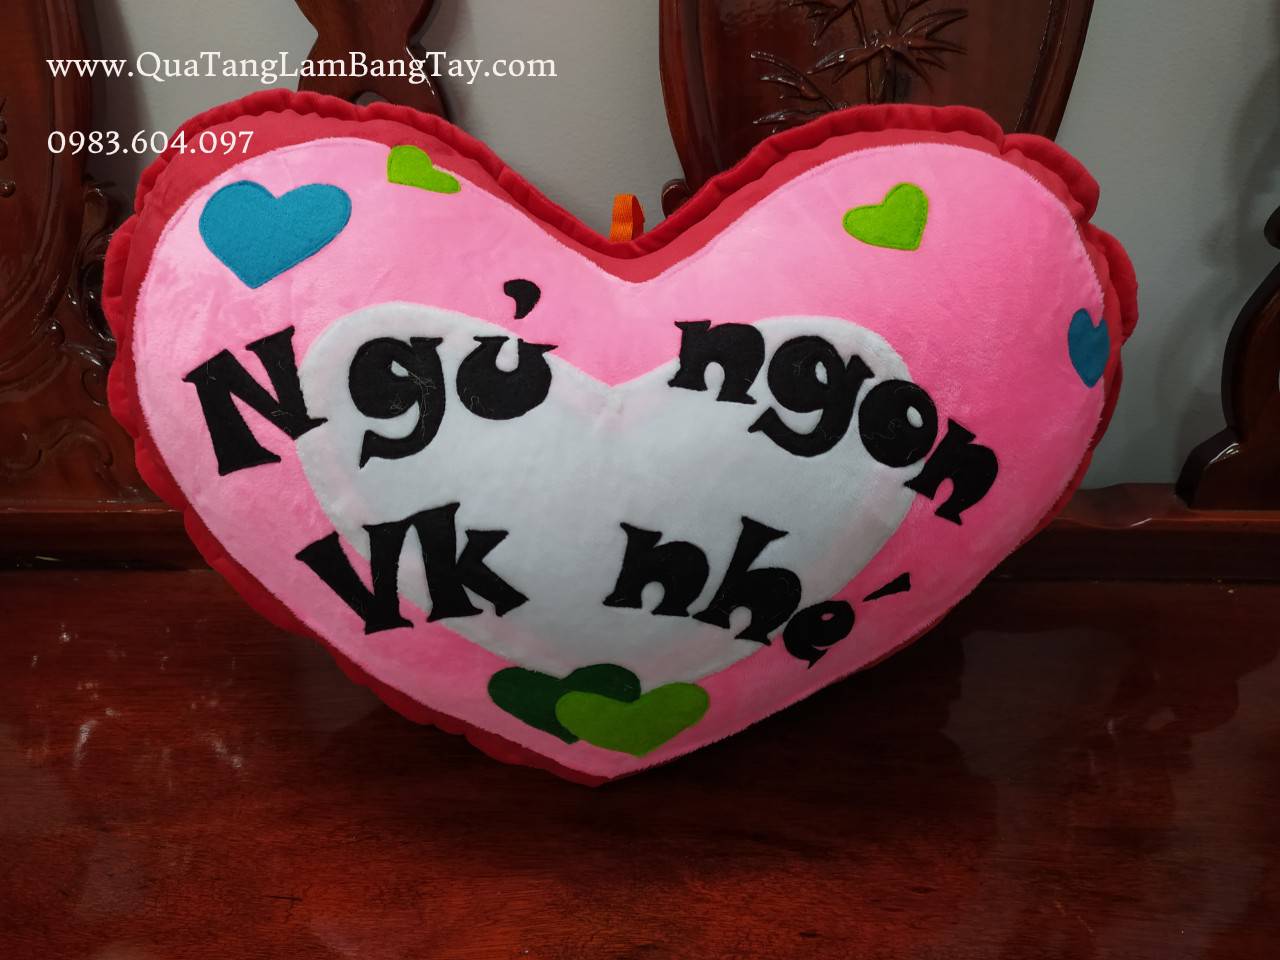 Gối handmade vải nỉ tặng bạn gái  hình trái tim Ngủ Ngon Vk Nhé